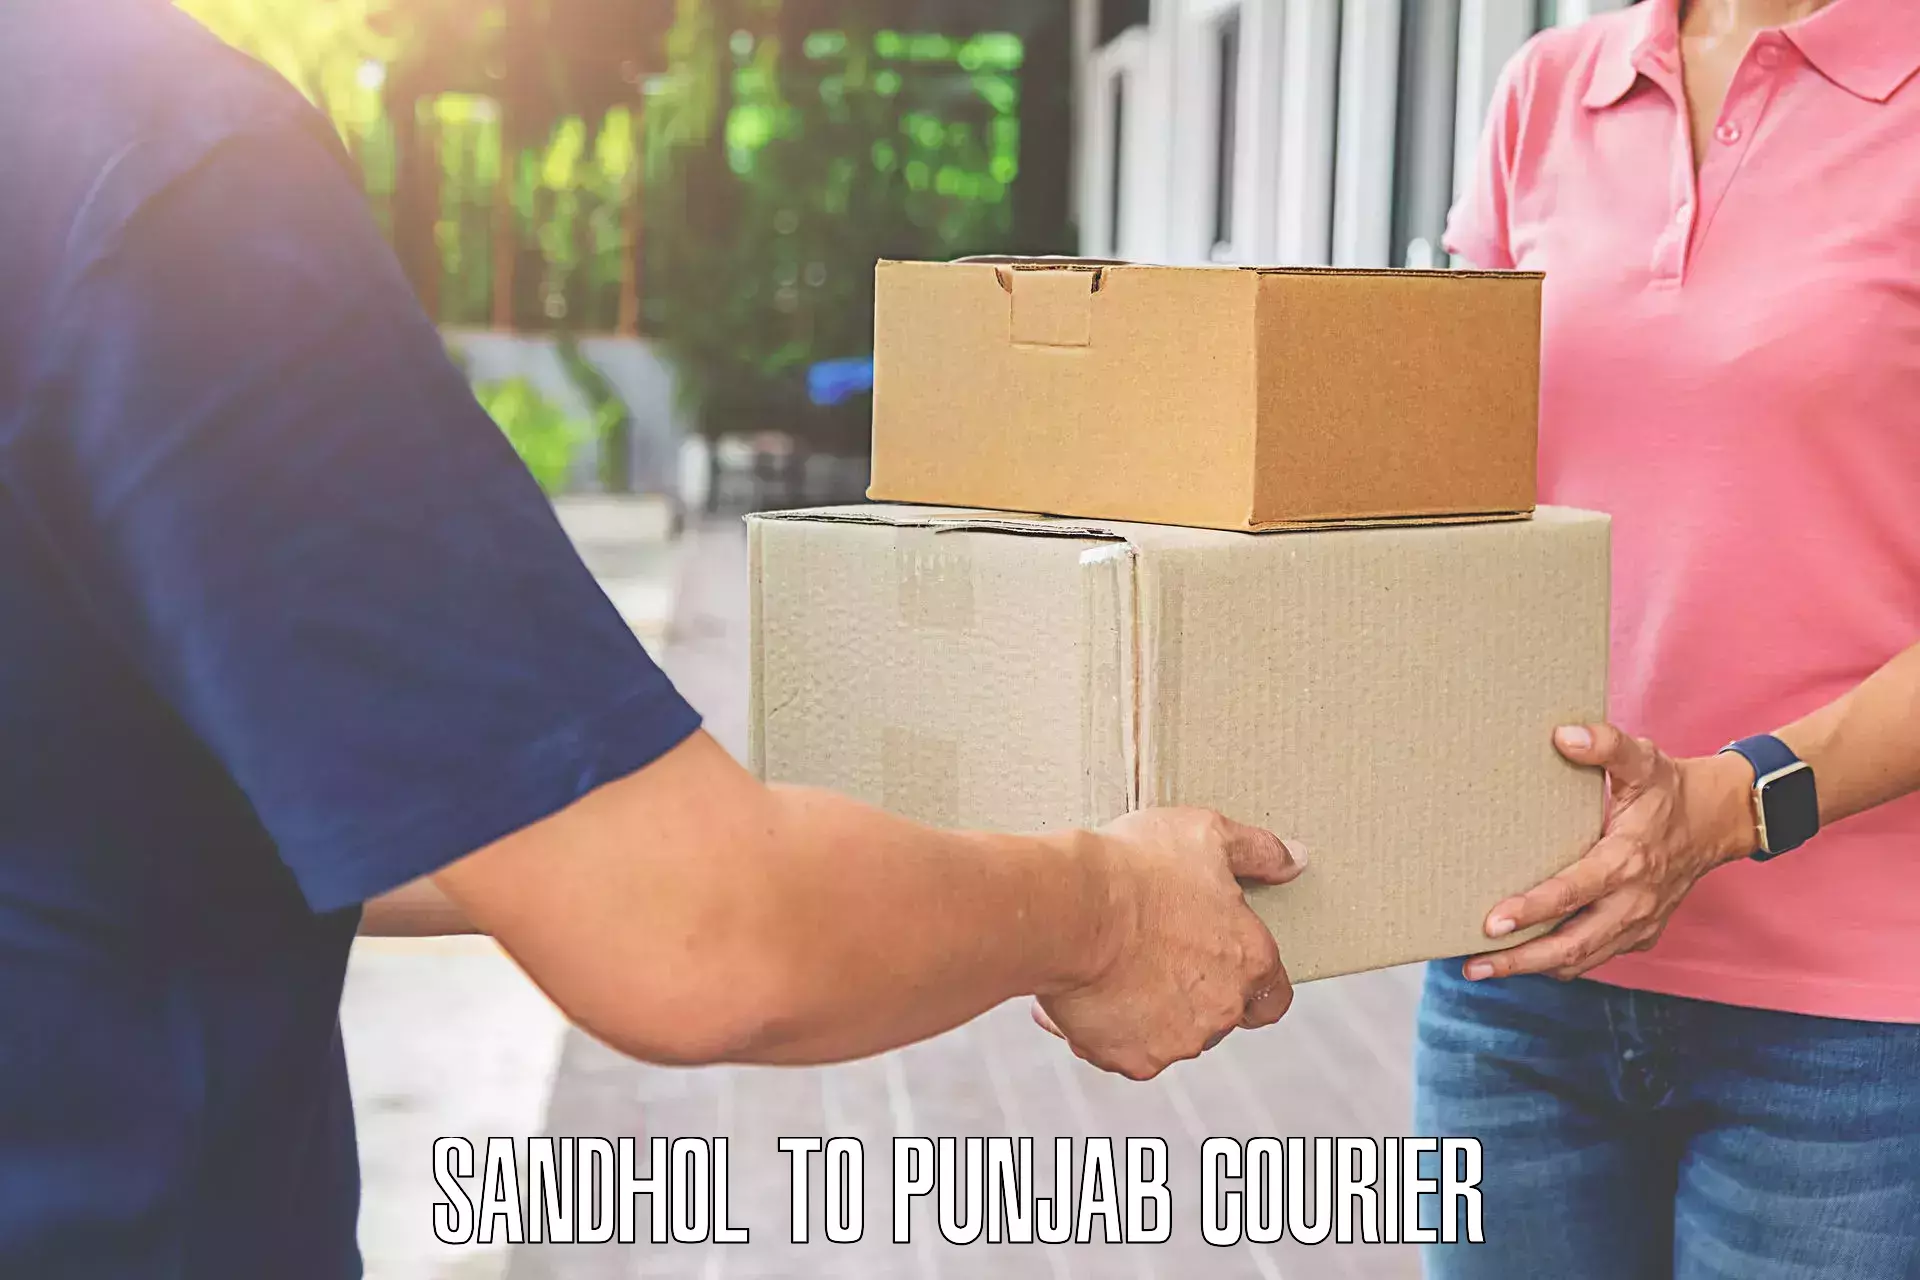 Train station baggage courier Sandhol to Punjab